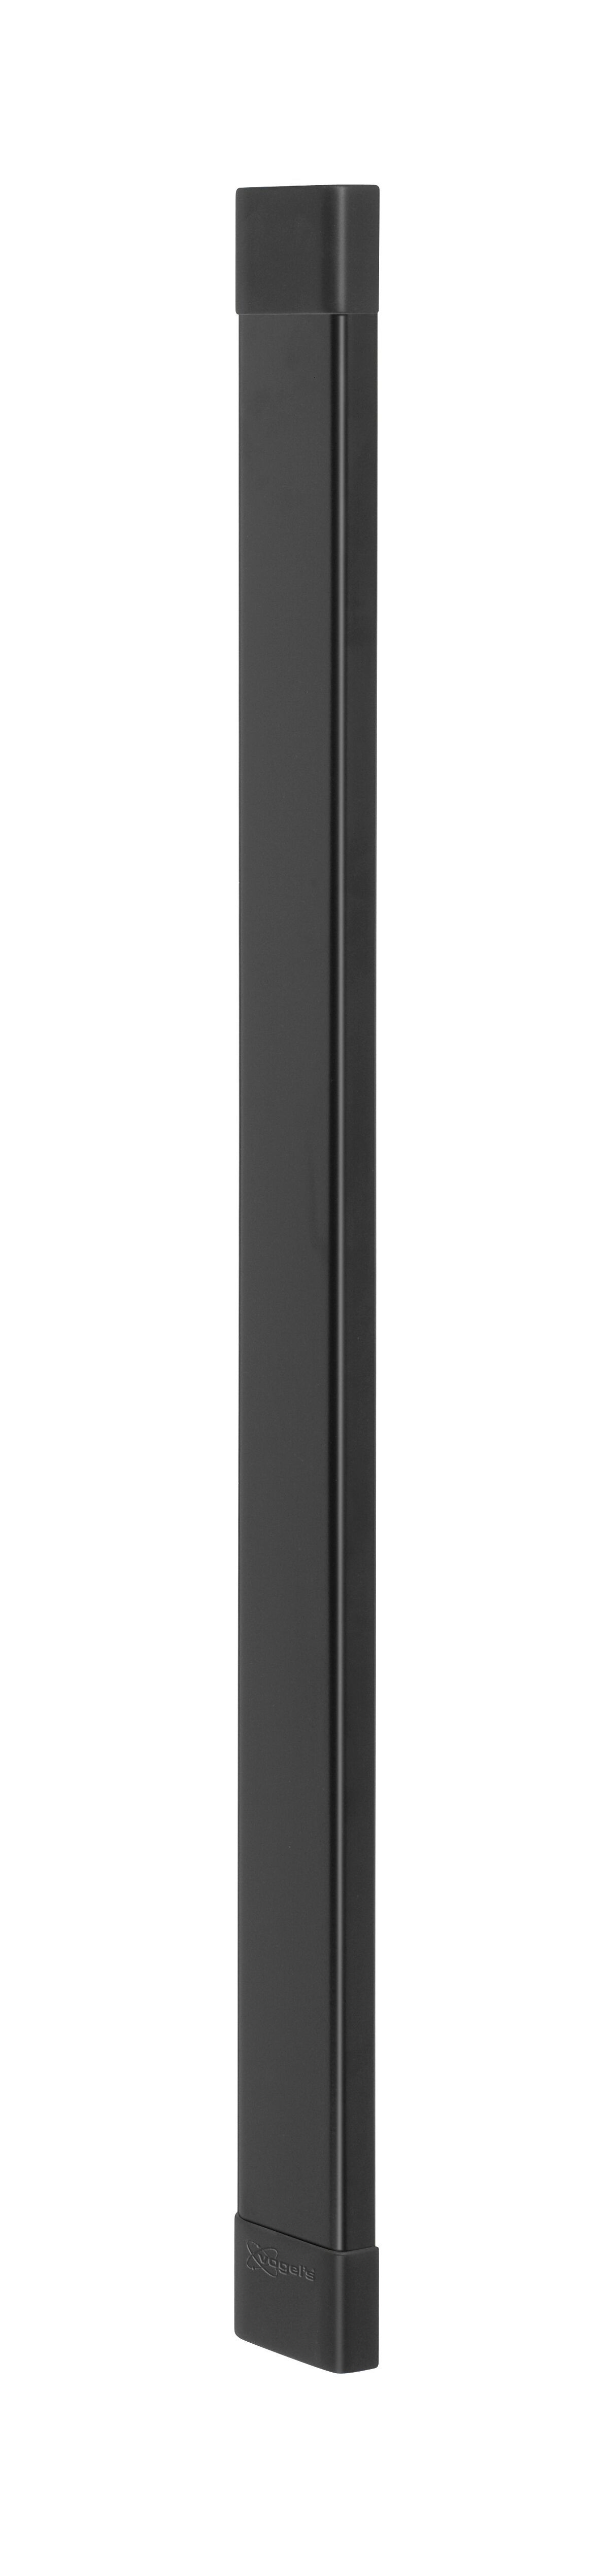 Vogel's CABLE 8 Canalina (nero) - Numero massimo di cavi da contenere: Fino a 8 cavi - Lunghezza: 94 cm - Product